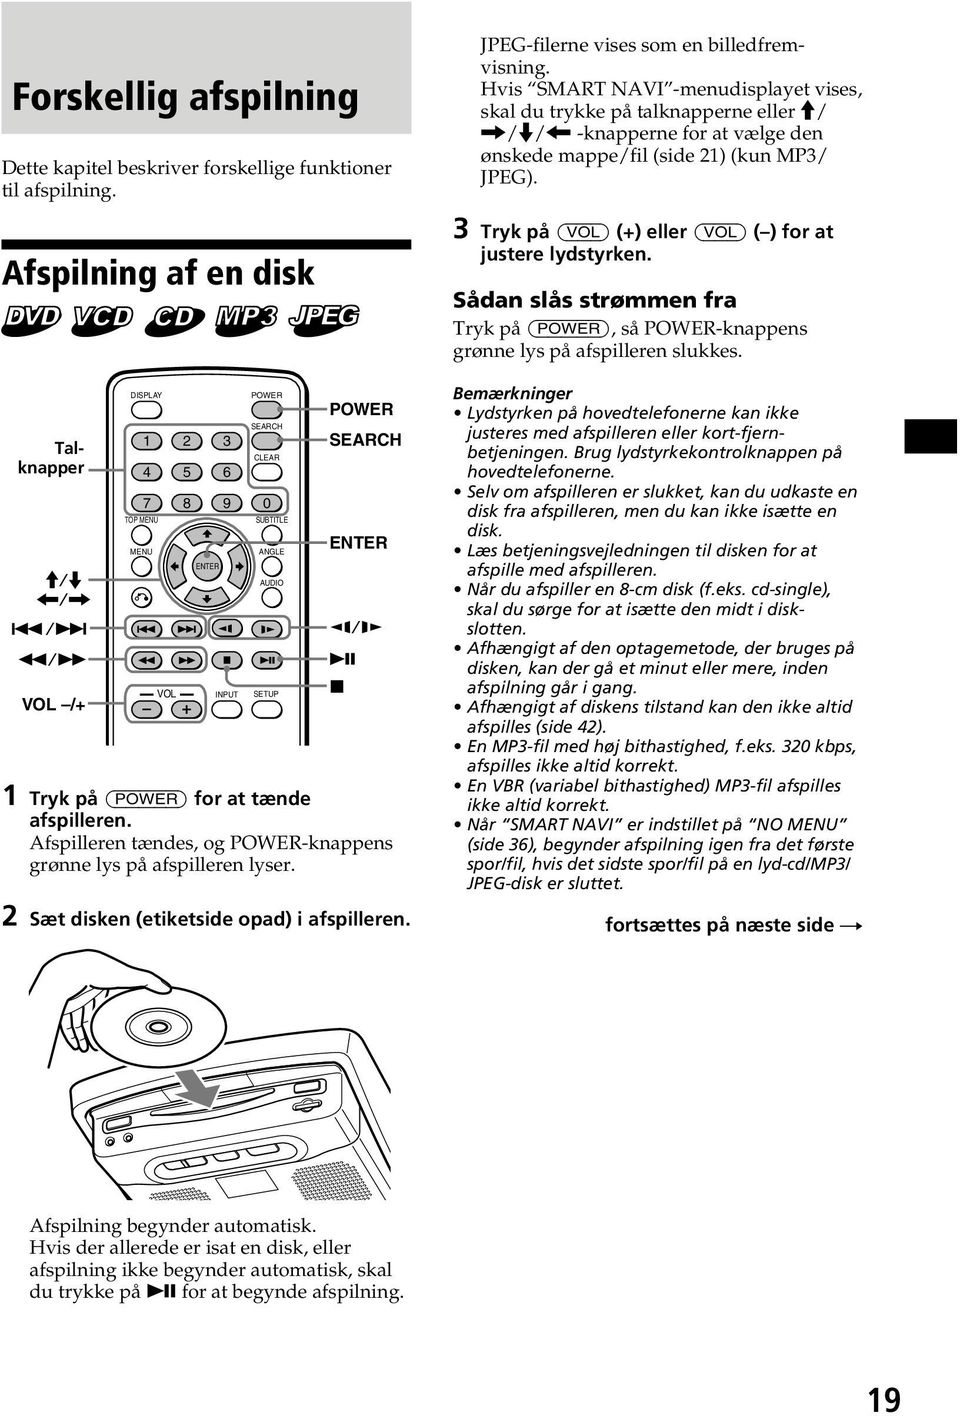 Afspilleren tændes, og POWER-knappens grønne lys på afspilleren lyser. 2 Sæt disken (etiketside opad) i afspilleren. JPEG-filerne vises som en billedfremvisning.